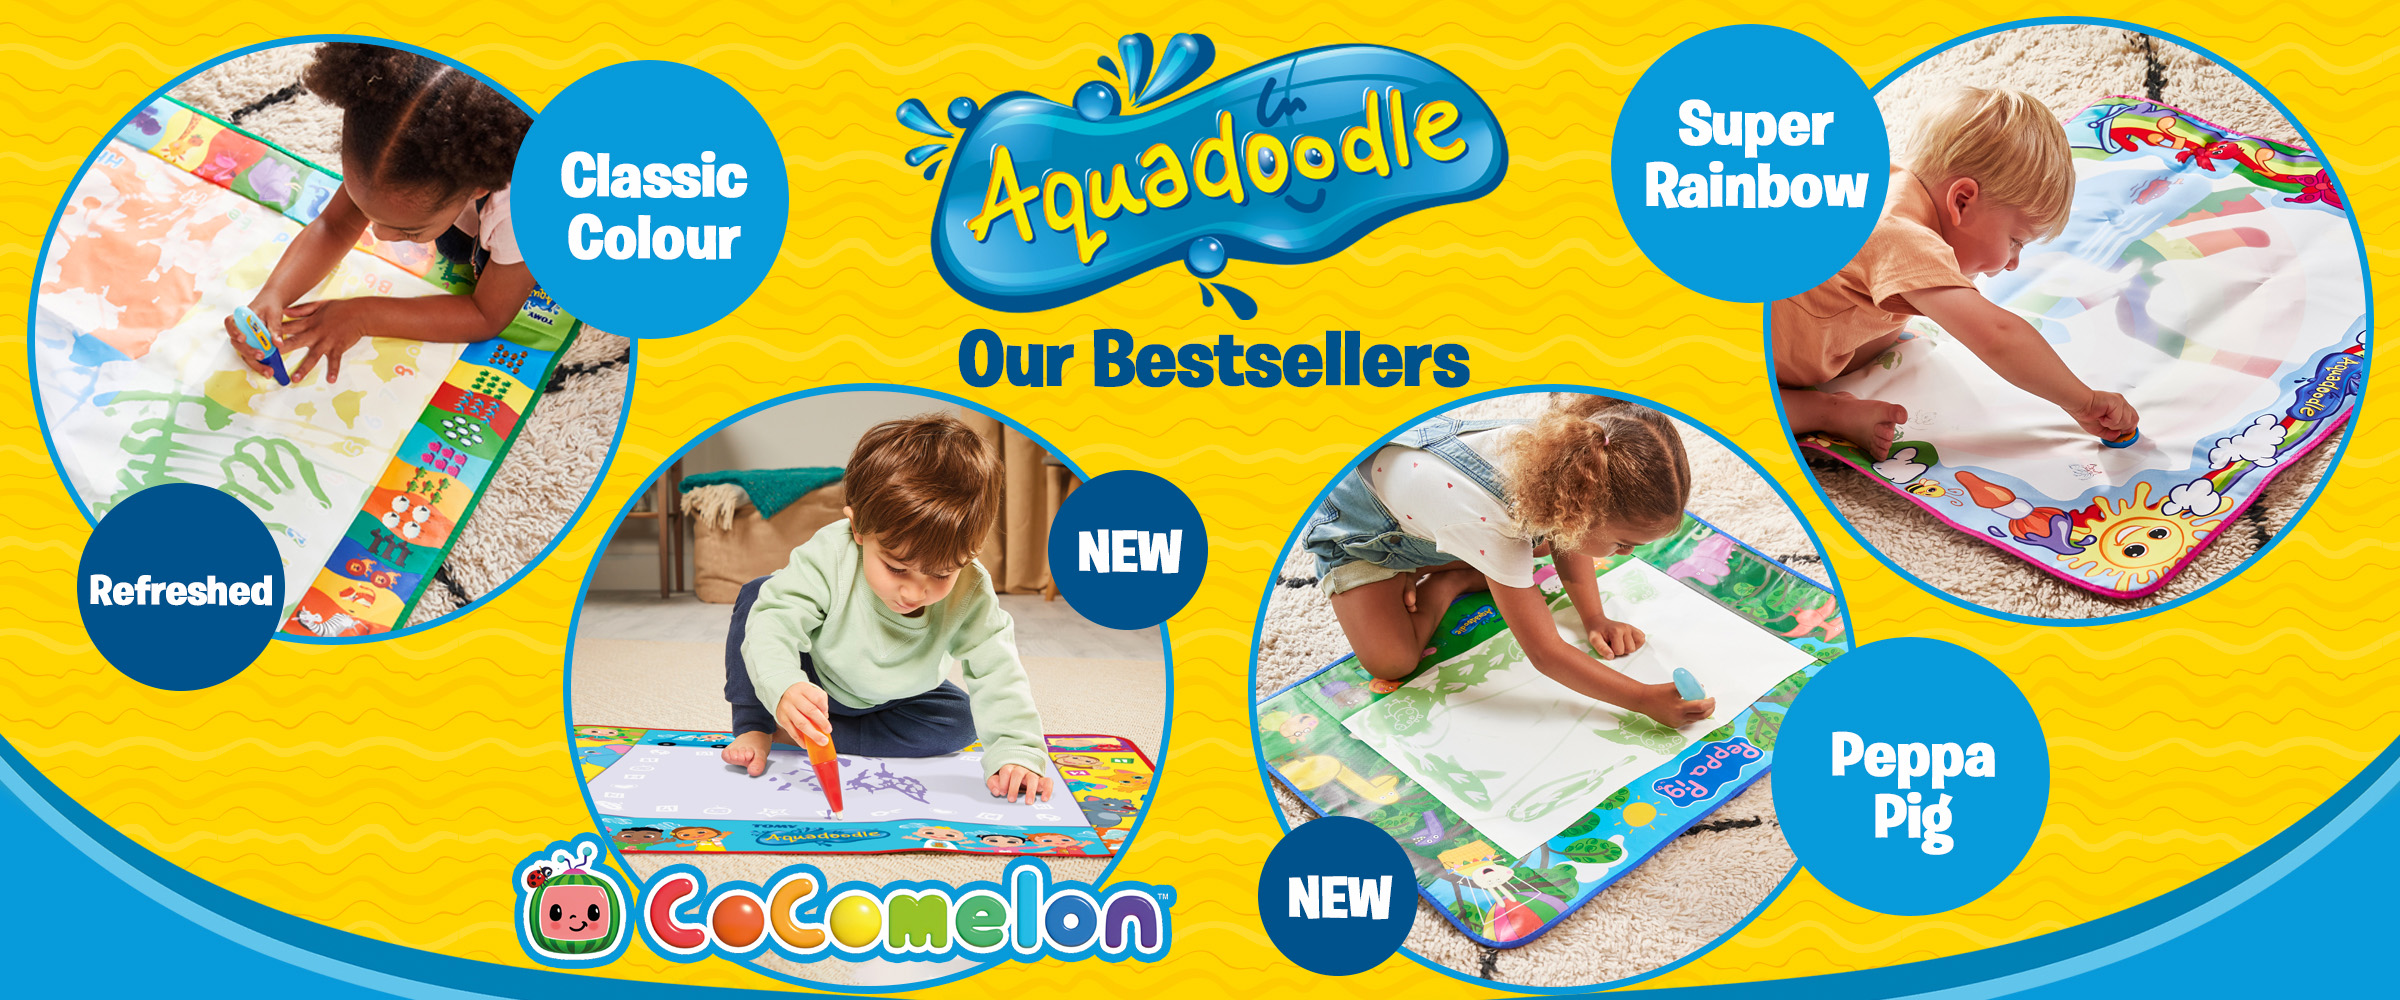 Aquadoodle Best Sellers